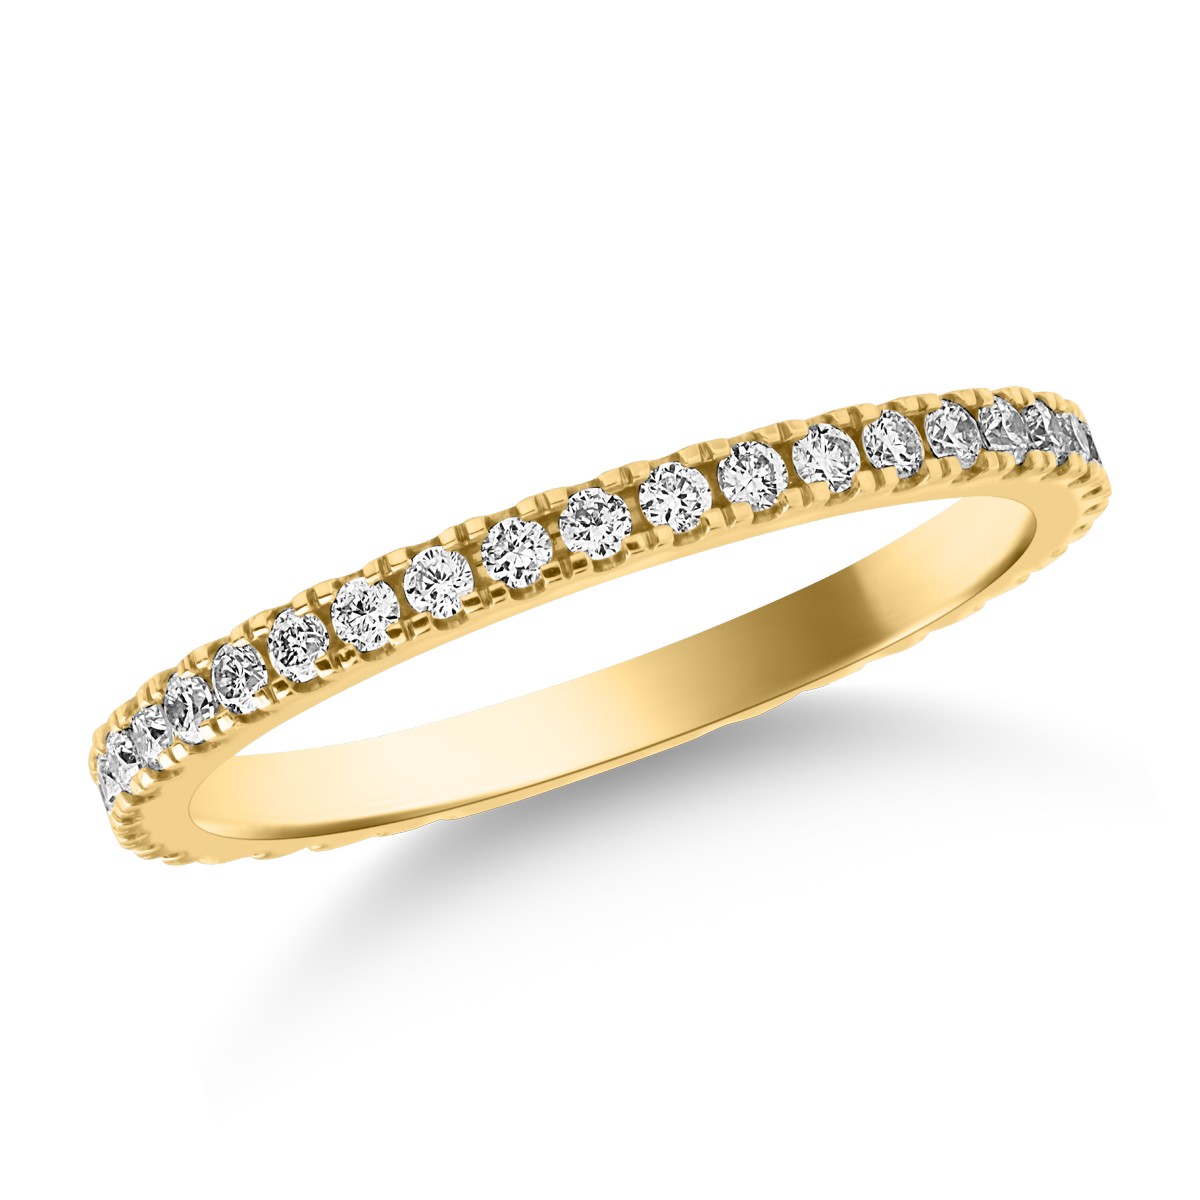 Örökkévalóság gyűrű sárga aranyból 0.33ct gyémántokkal